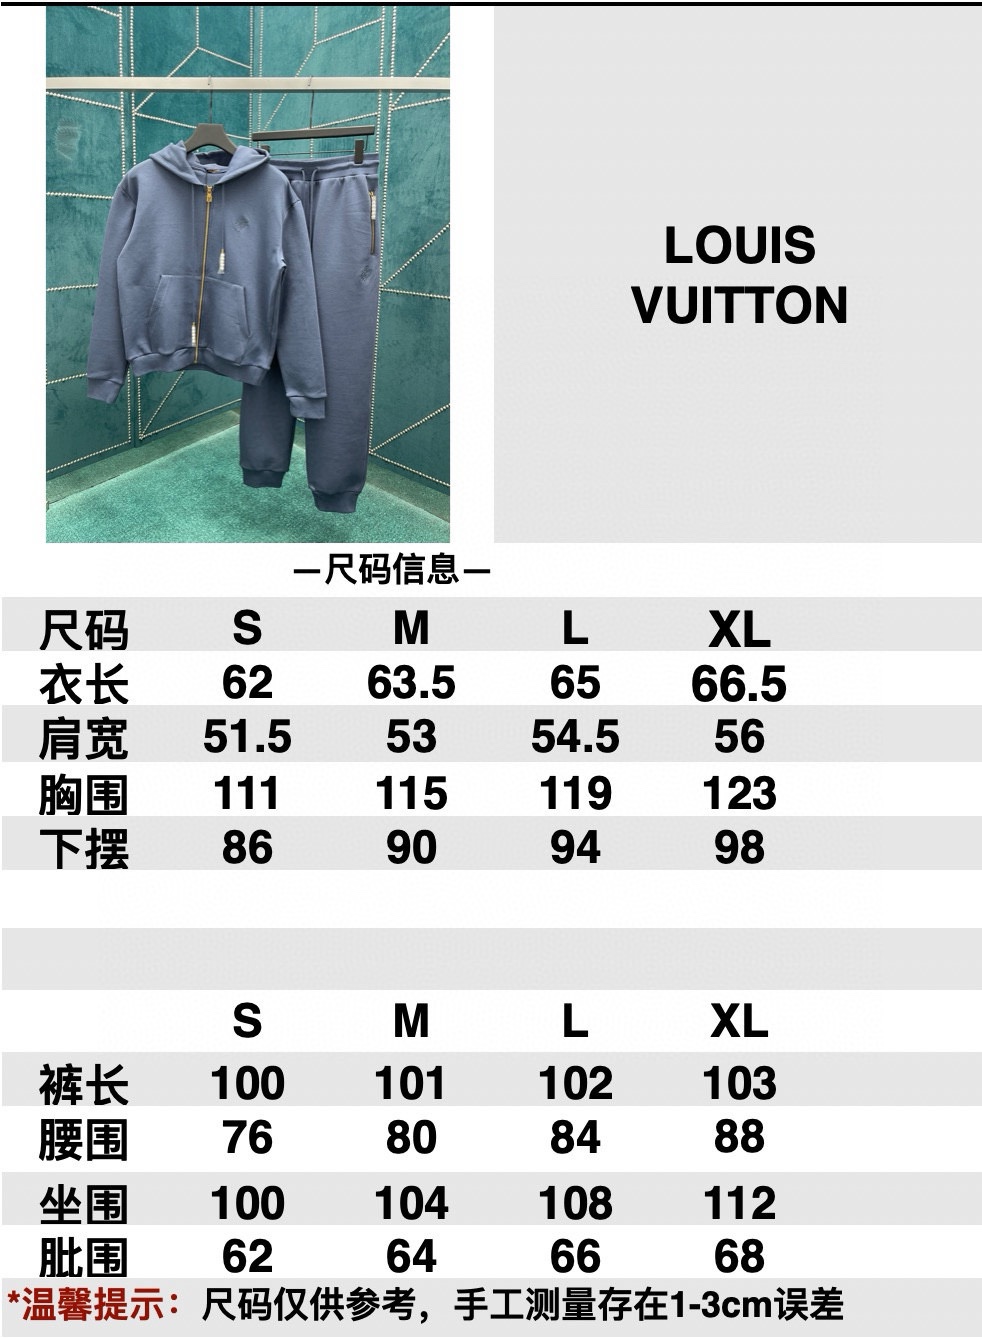 Louis Vuitton AAAAA+